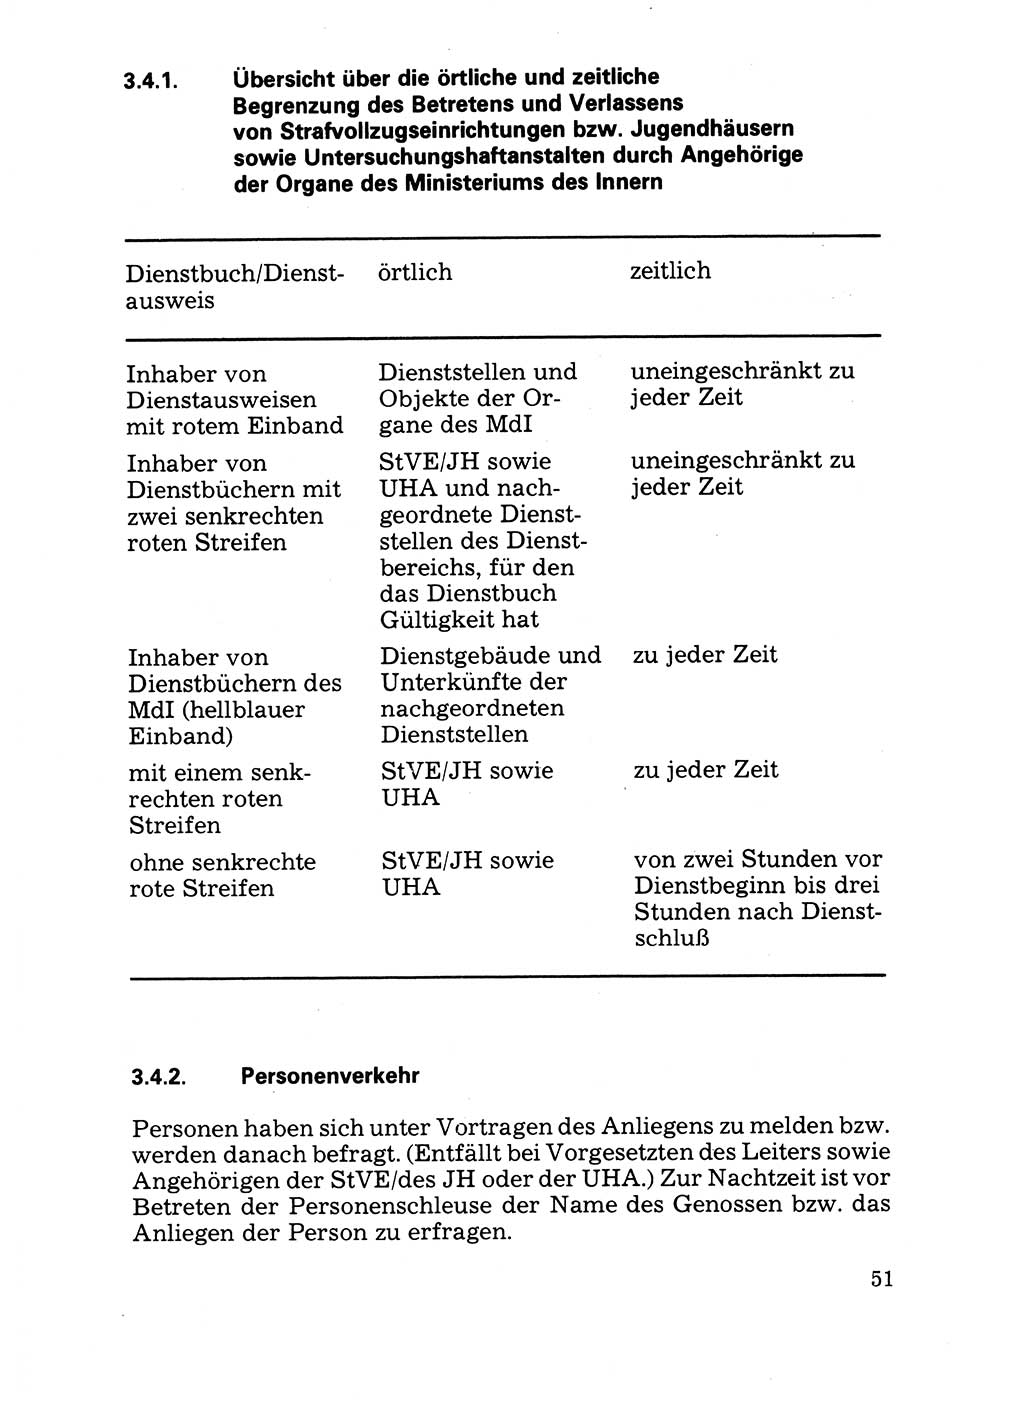 Handbuch für operative Dienste, Abteilung Strafvollzug (SV) [Ministerium des Innern (MdI) Deutsche Demokratische Republik (DDR)] 1981, Seite 51 (Hb. op. D. Abt. SV MdI DDR 1981, S. 51)